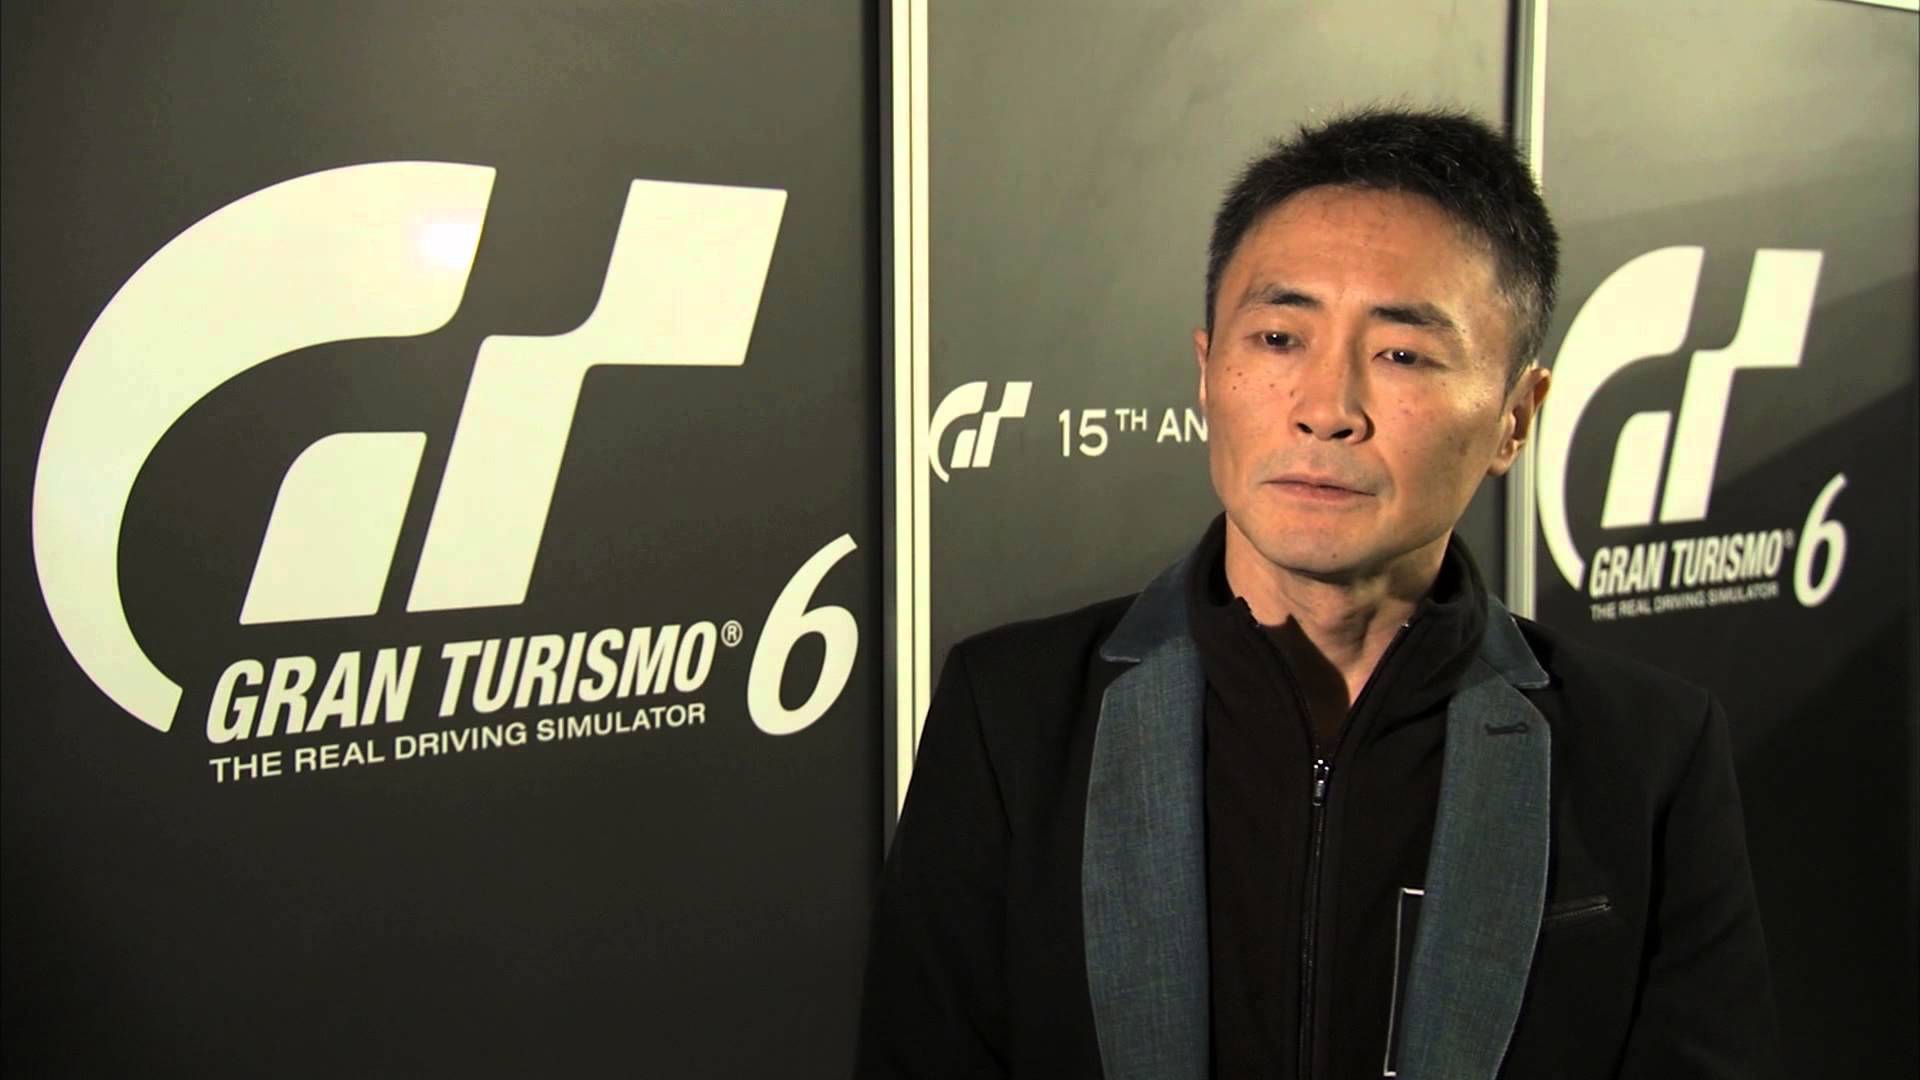 PS3 è stata un vero incubo' ammette il creatore di Gran Turismo, Kazunori  Yamauchi